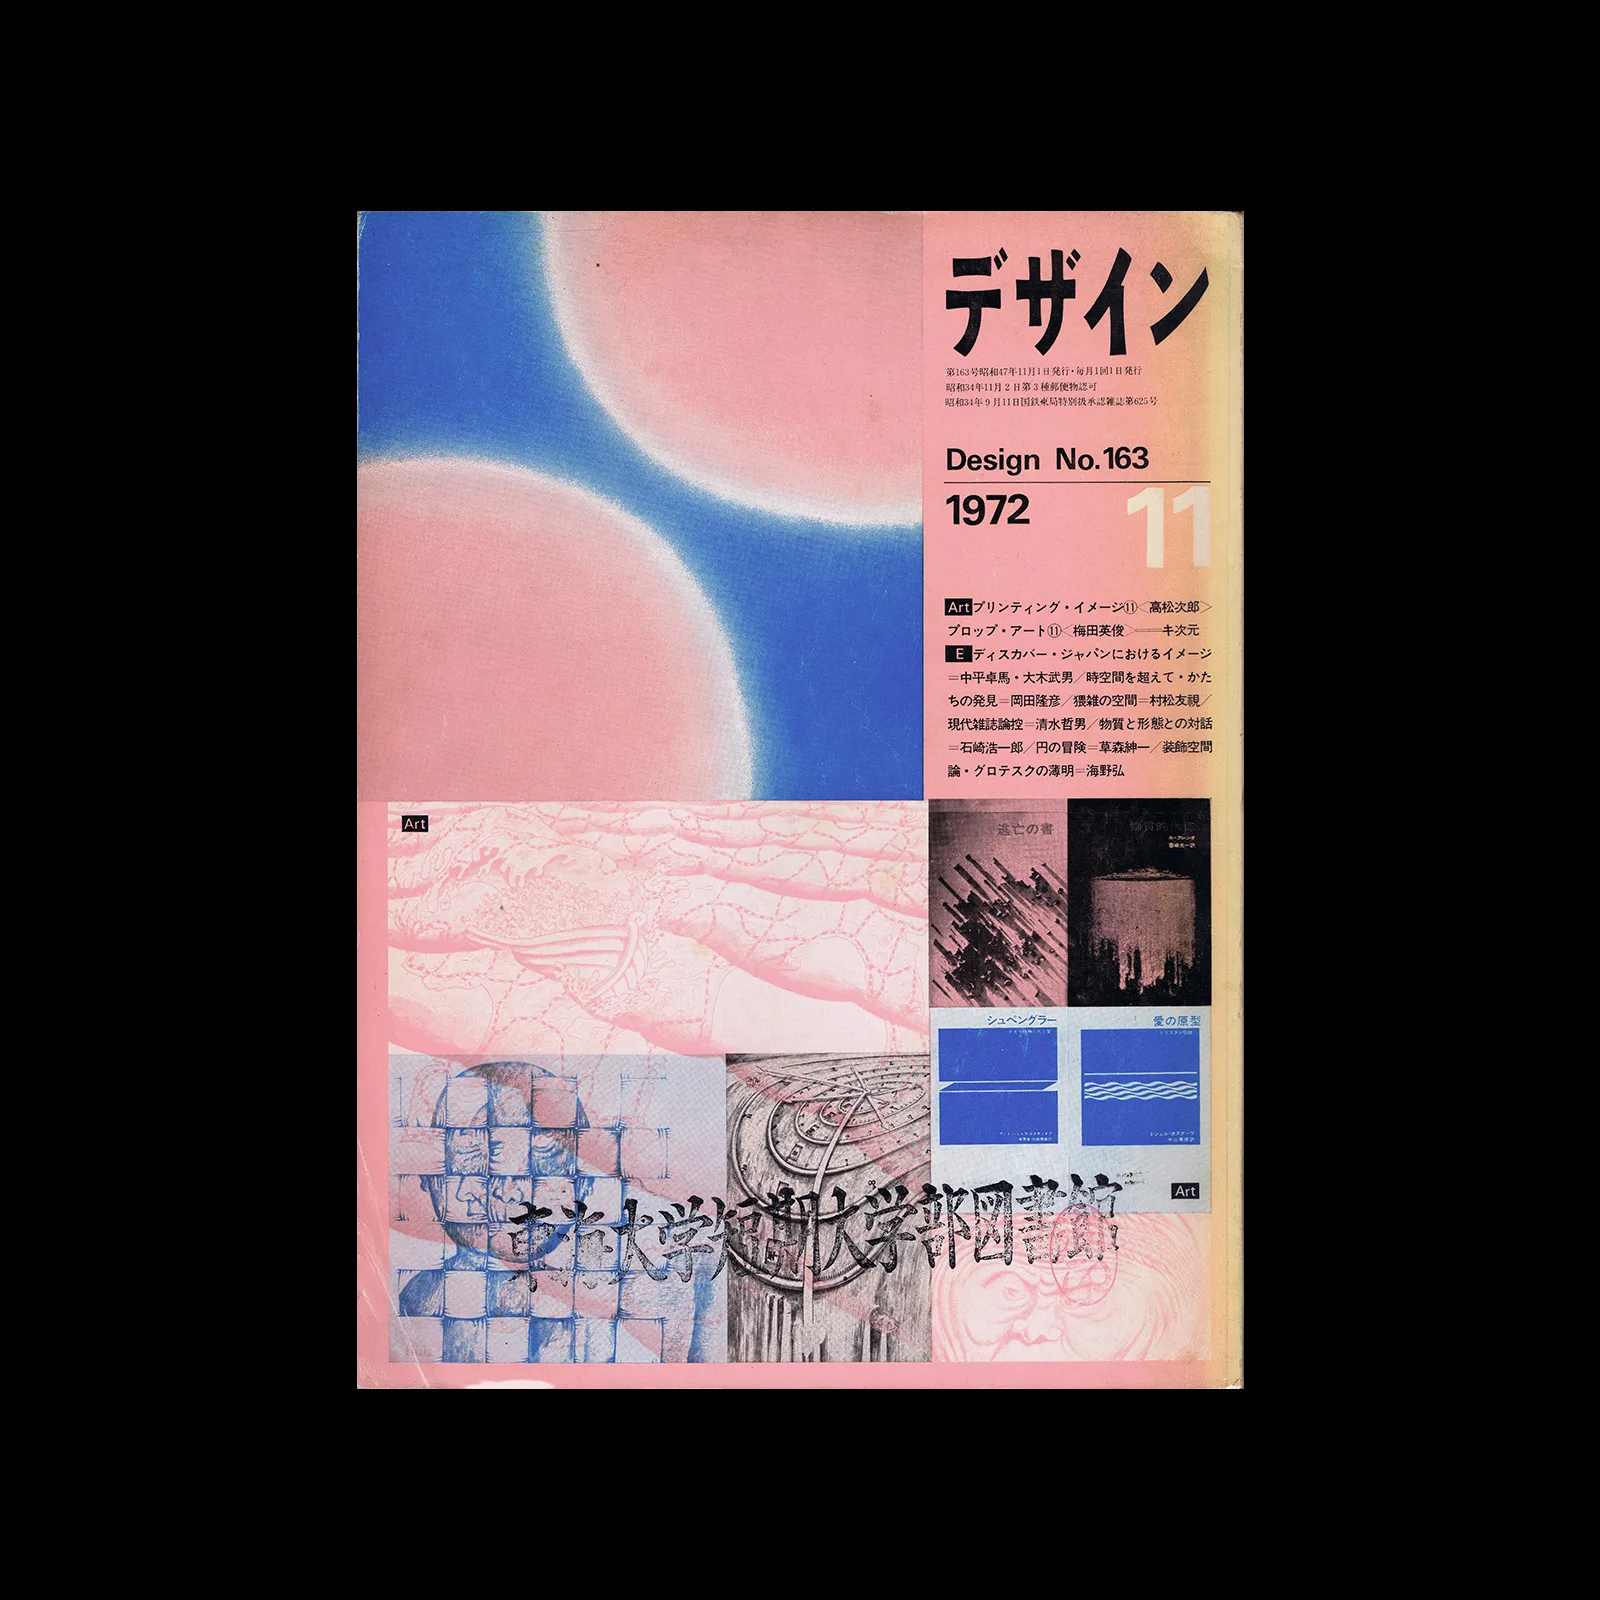 Design No.163 November 1972. Cover design by Koji Kusafuka